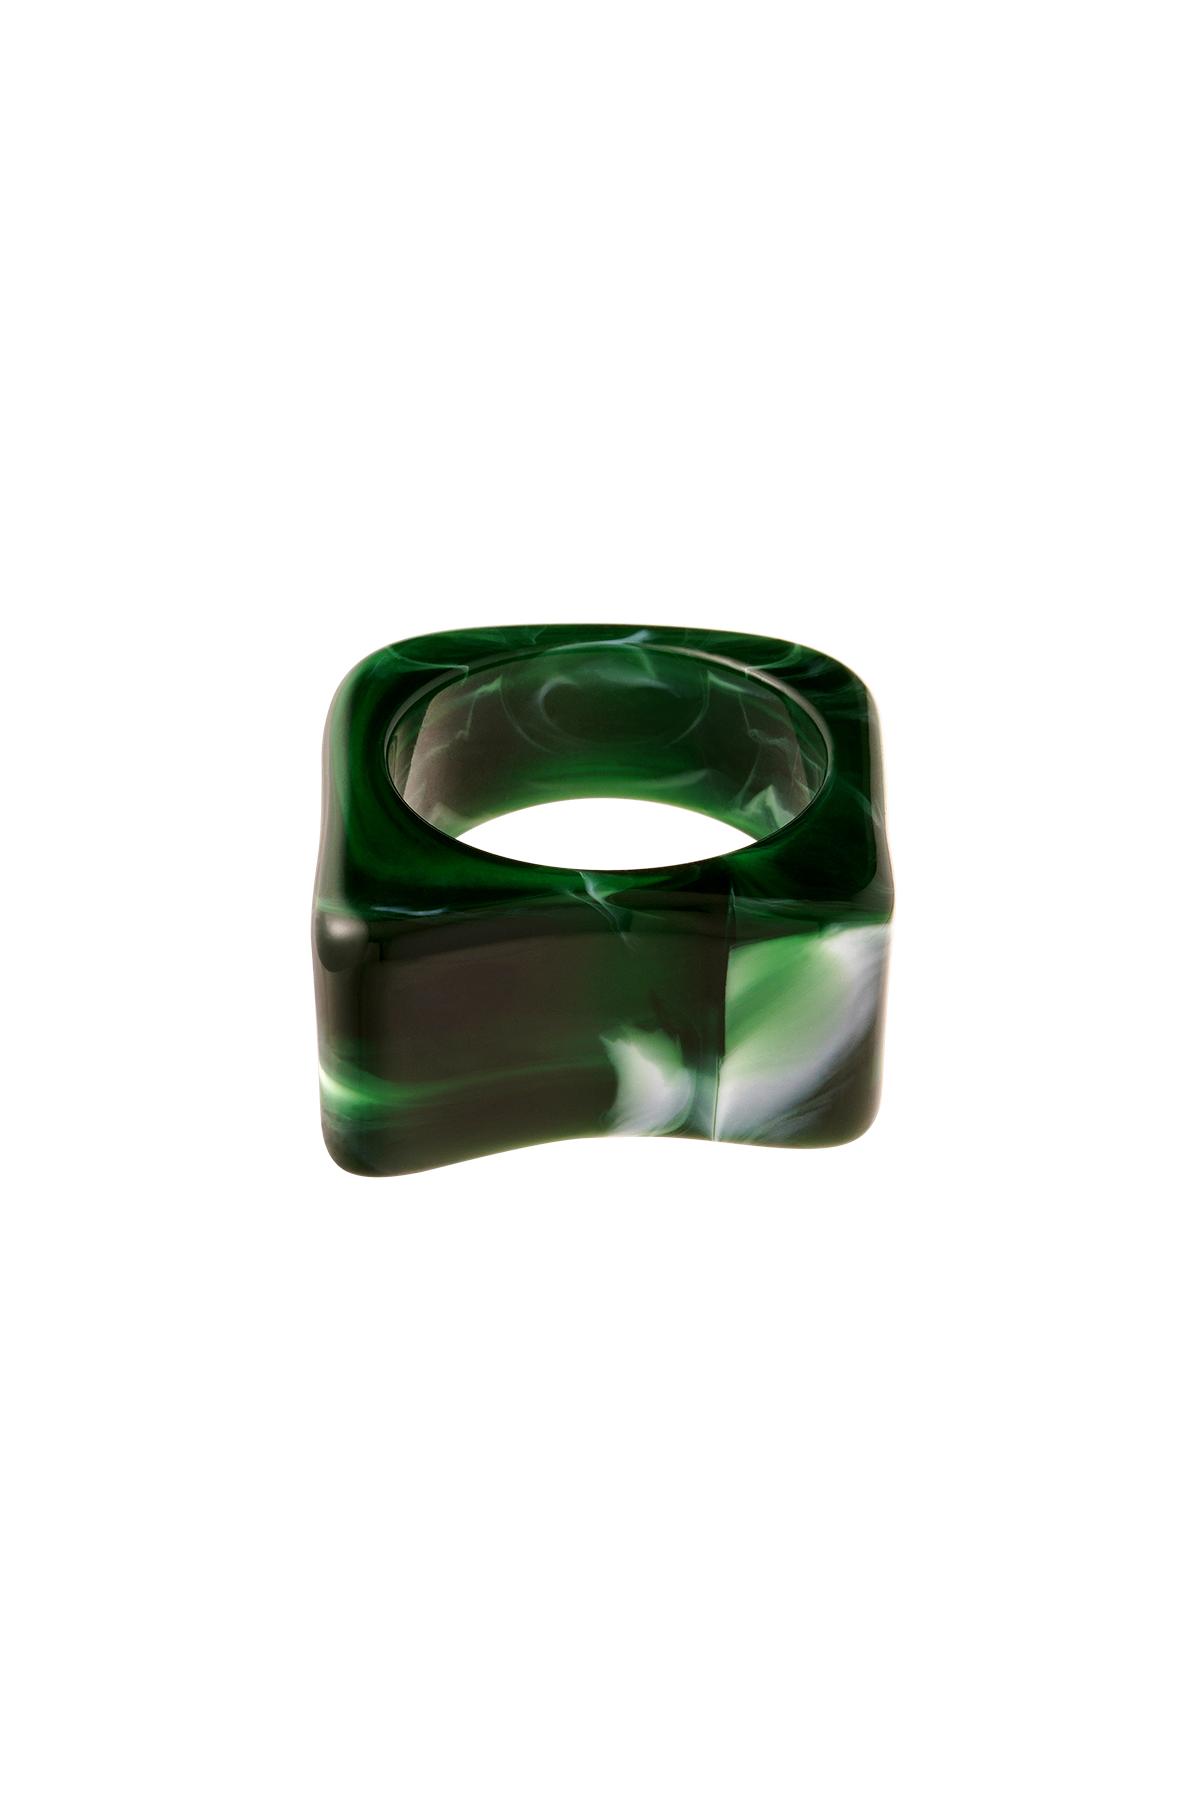 Cuadrado de anillo de resina polivinílica Verde 17